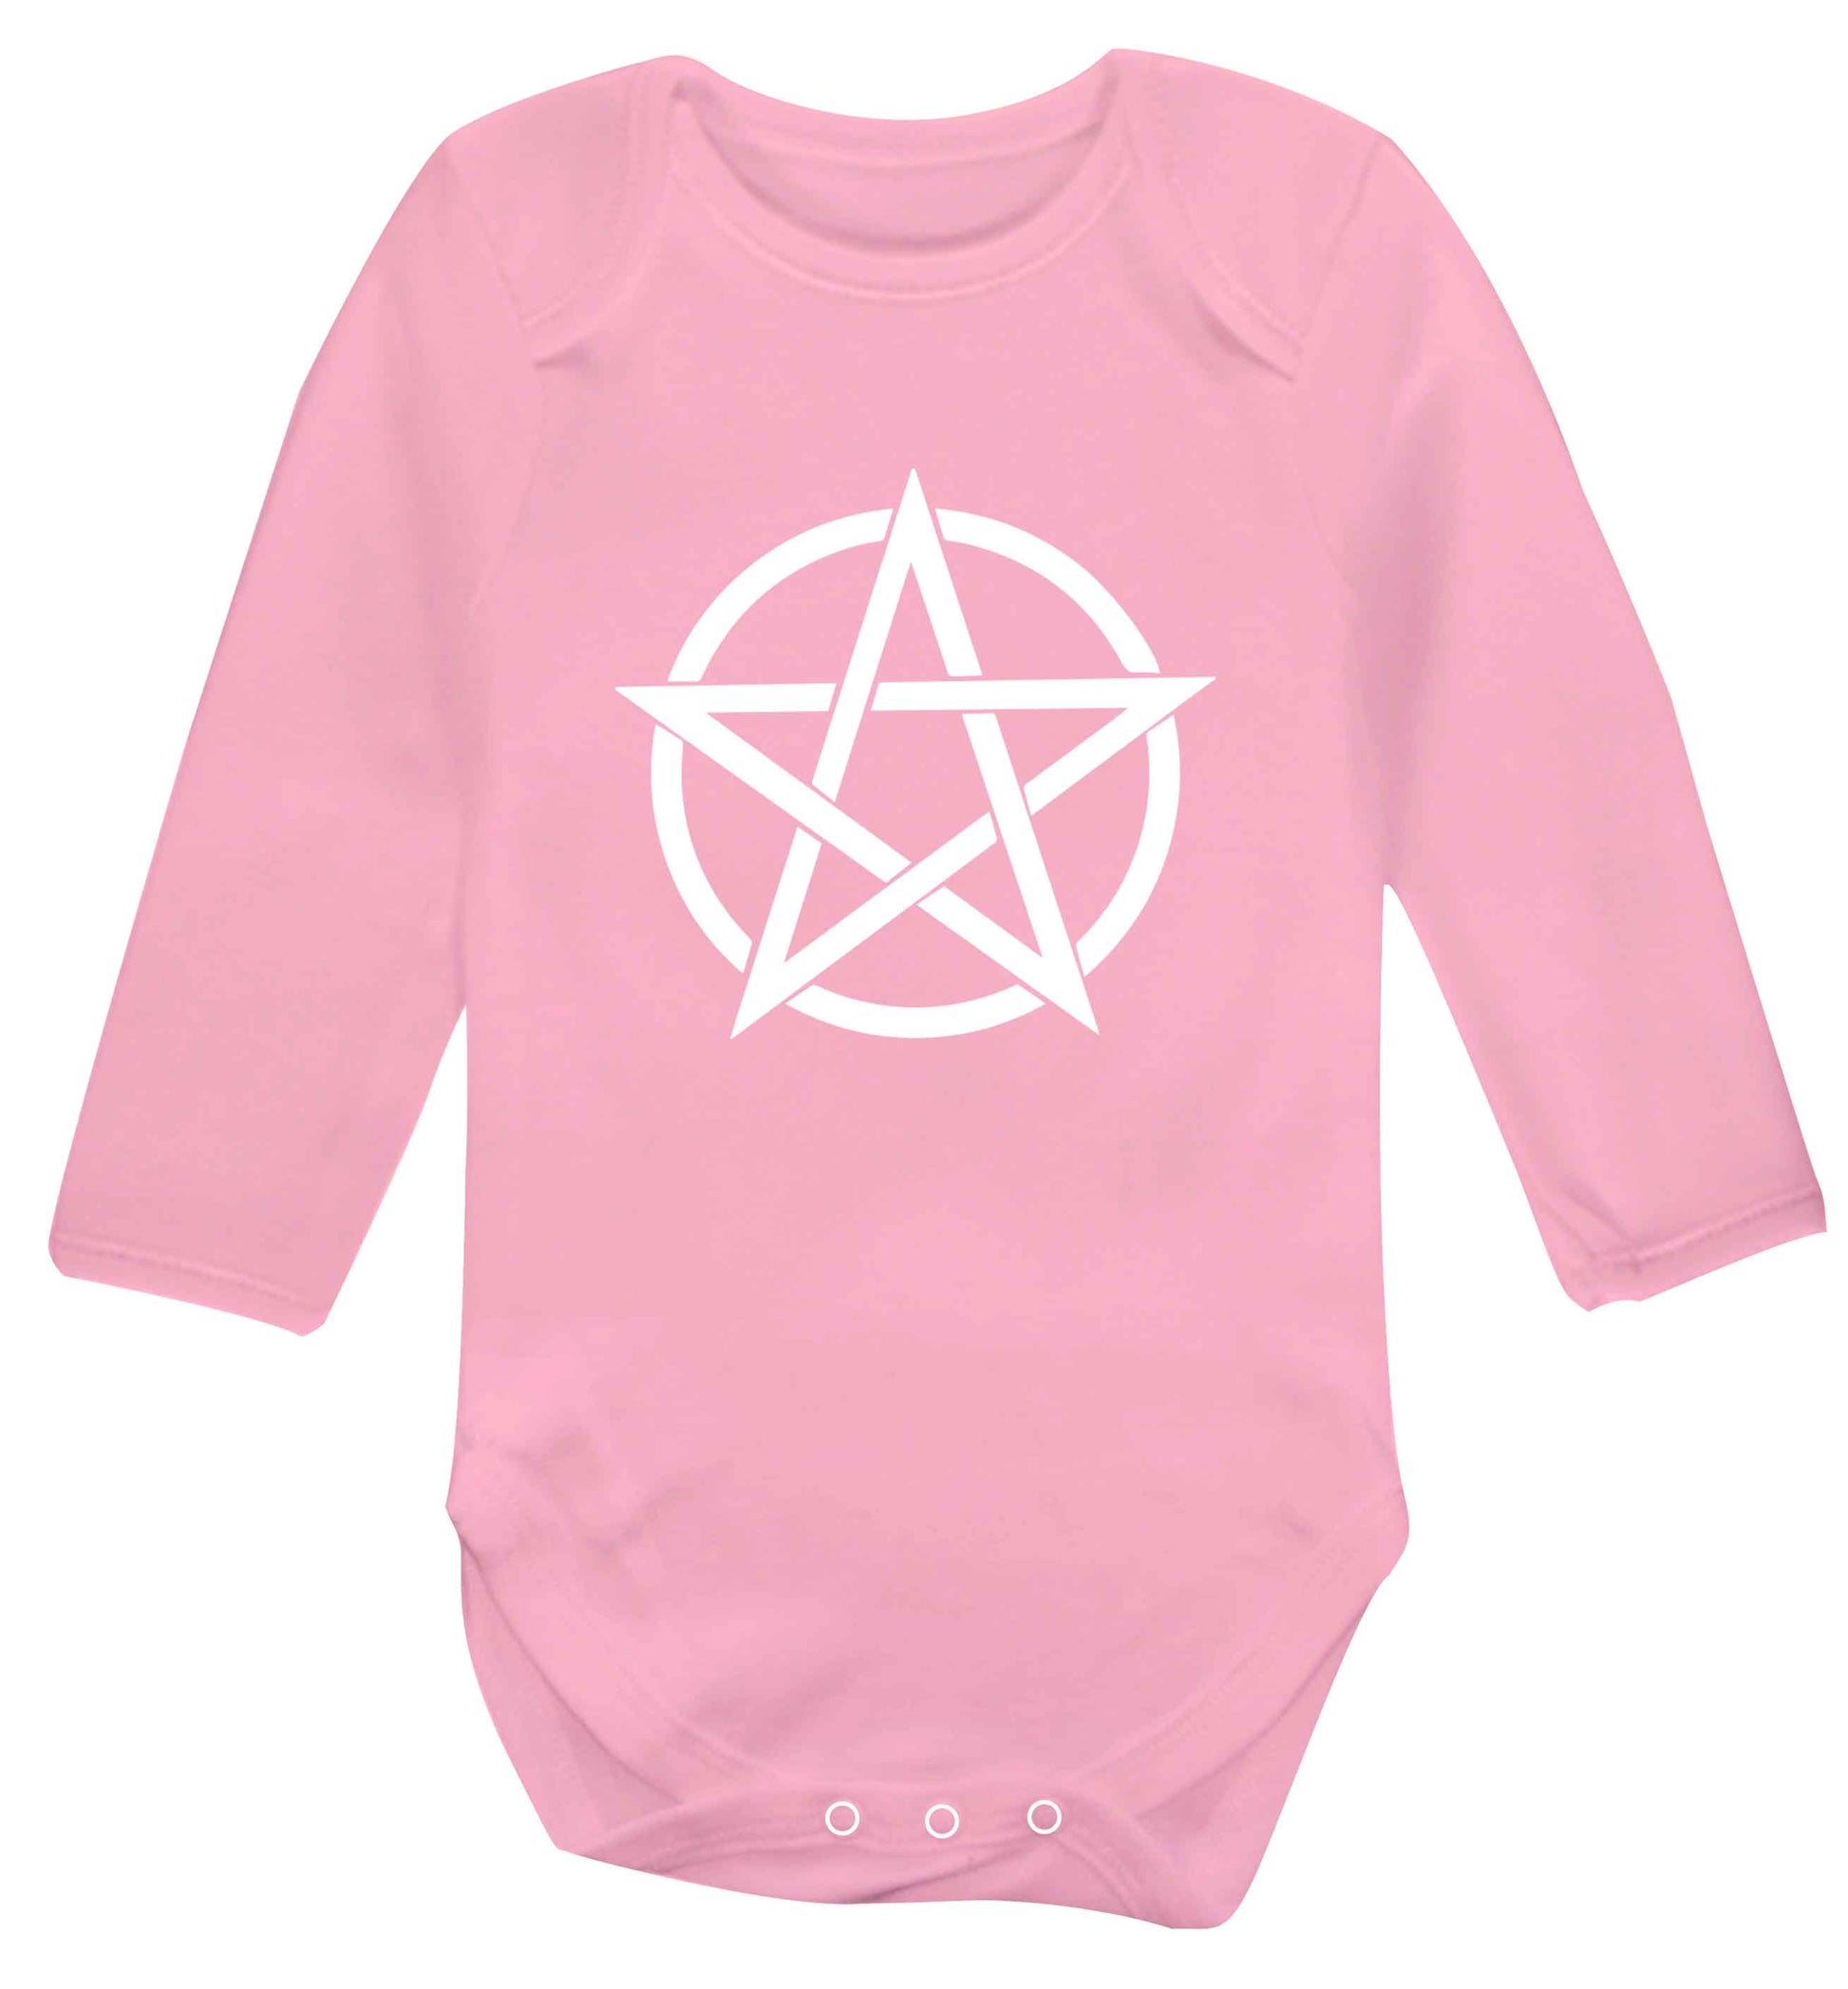 Pentagram symbol baby vest long sleeved pale pink 6-12 months